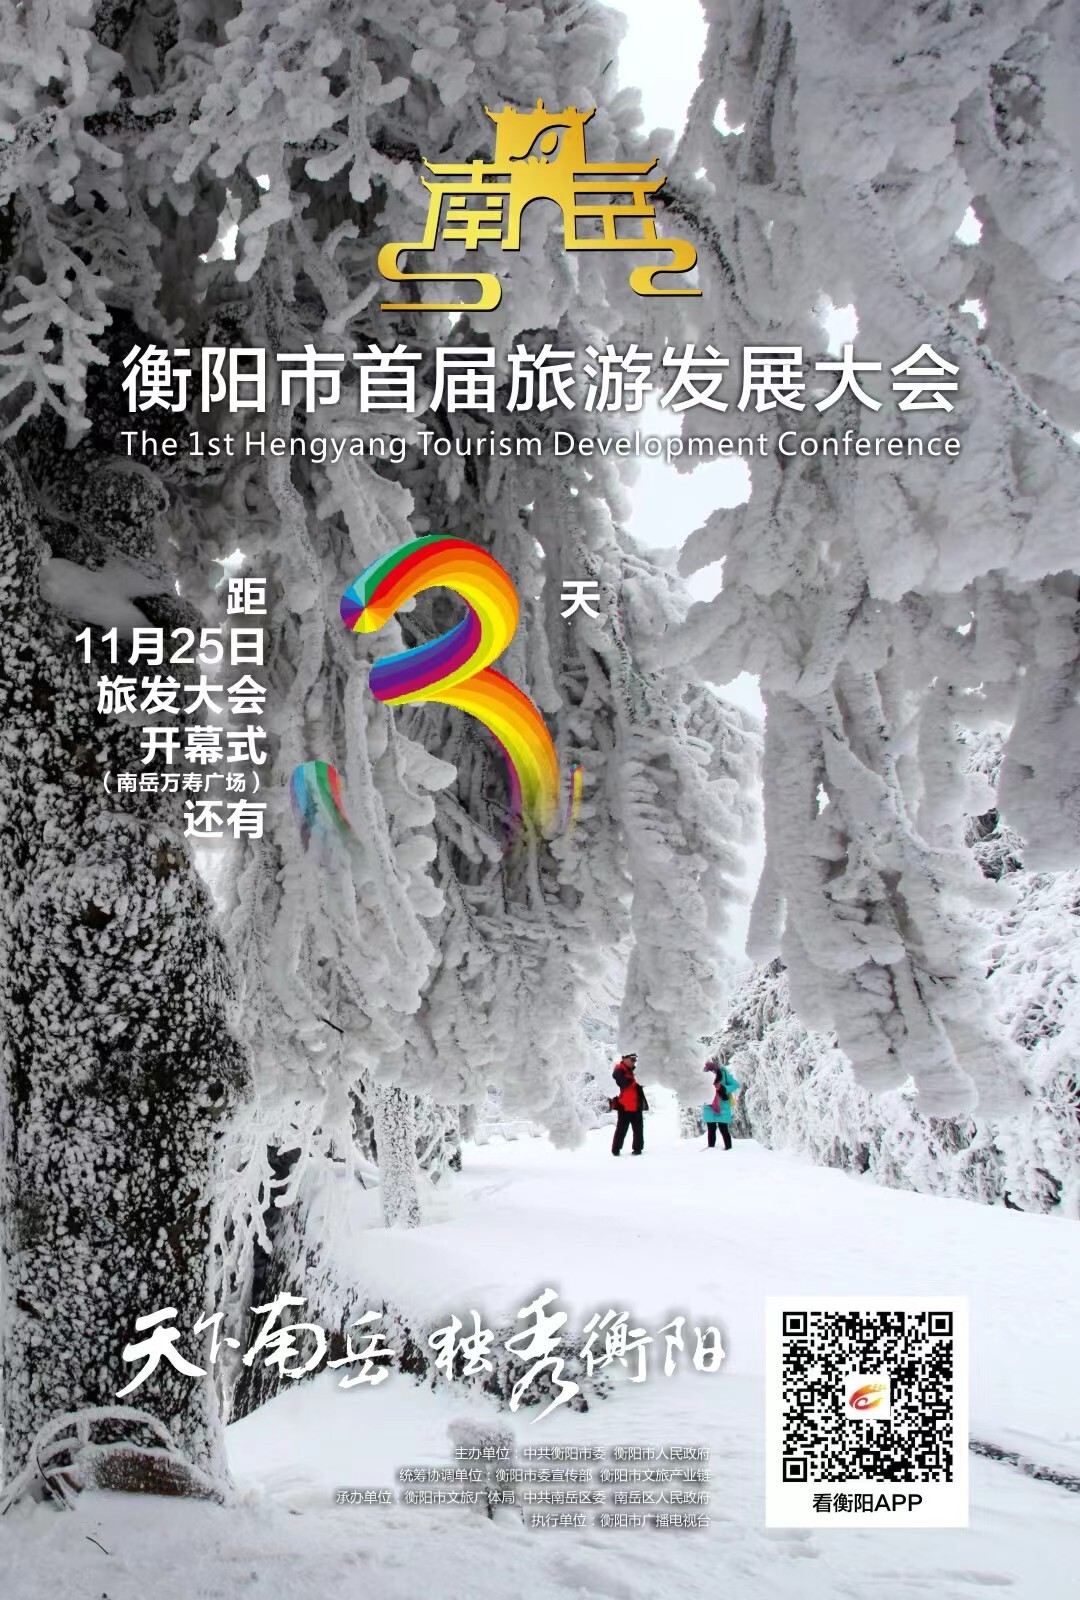 海报 | 衡阳市首届旅游发展大会倒计时